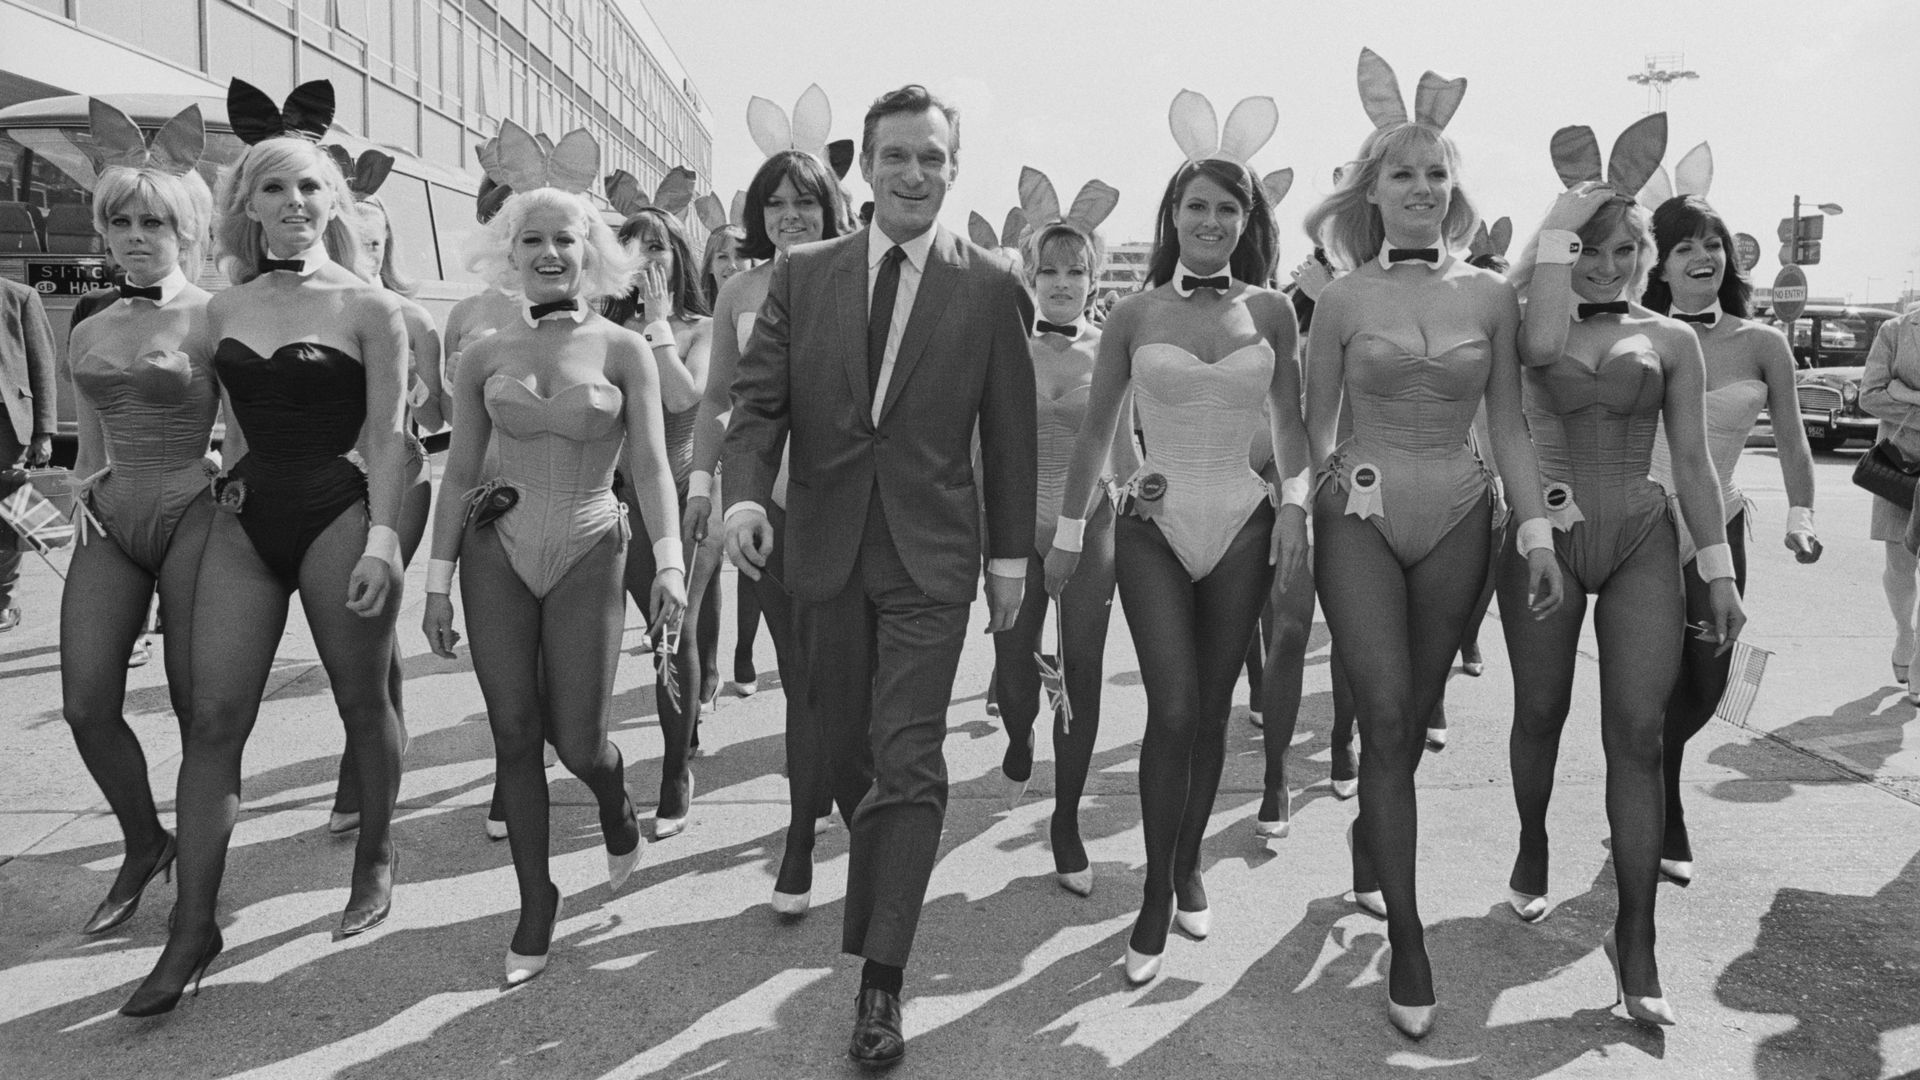 Le créateur de Playboy, Hugh Hefner (1926-2017), en compagnie d’un groupe de playmates à l’aéroport de Londres (aujourd’hui Heathrow), le 25 juin 1966. Hefner est arrivé en avion pour l’ouverture du Playboy Club de Londres.